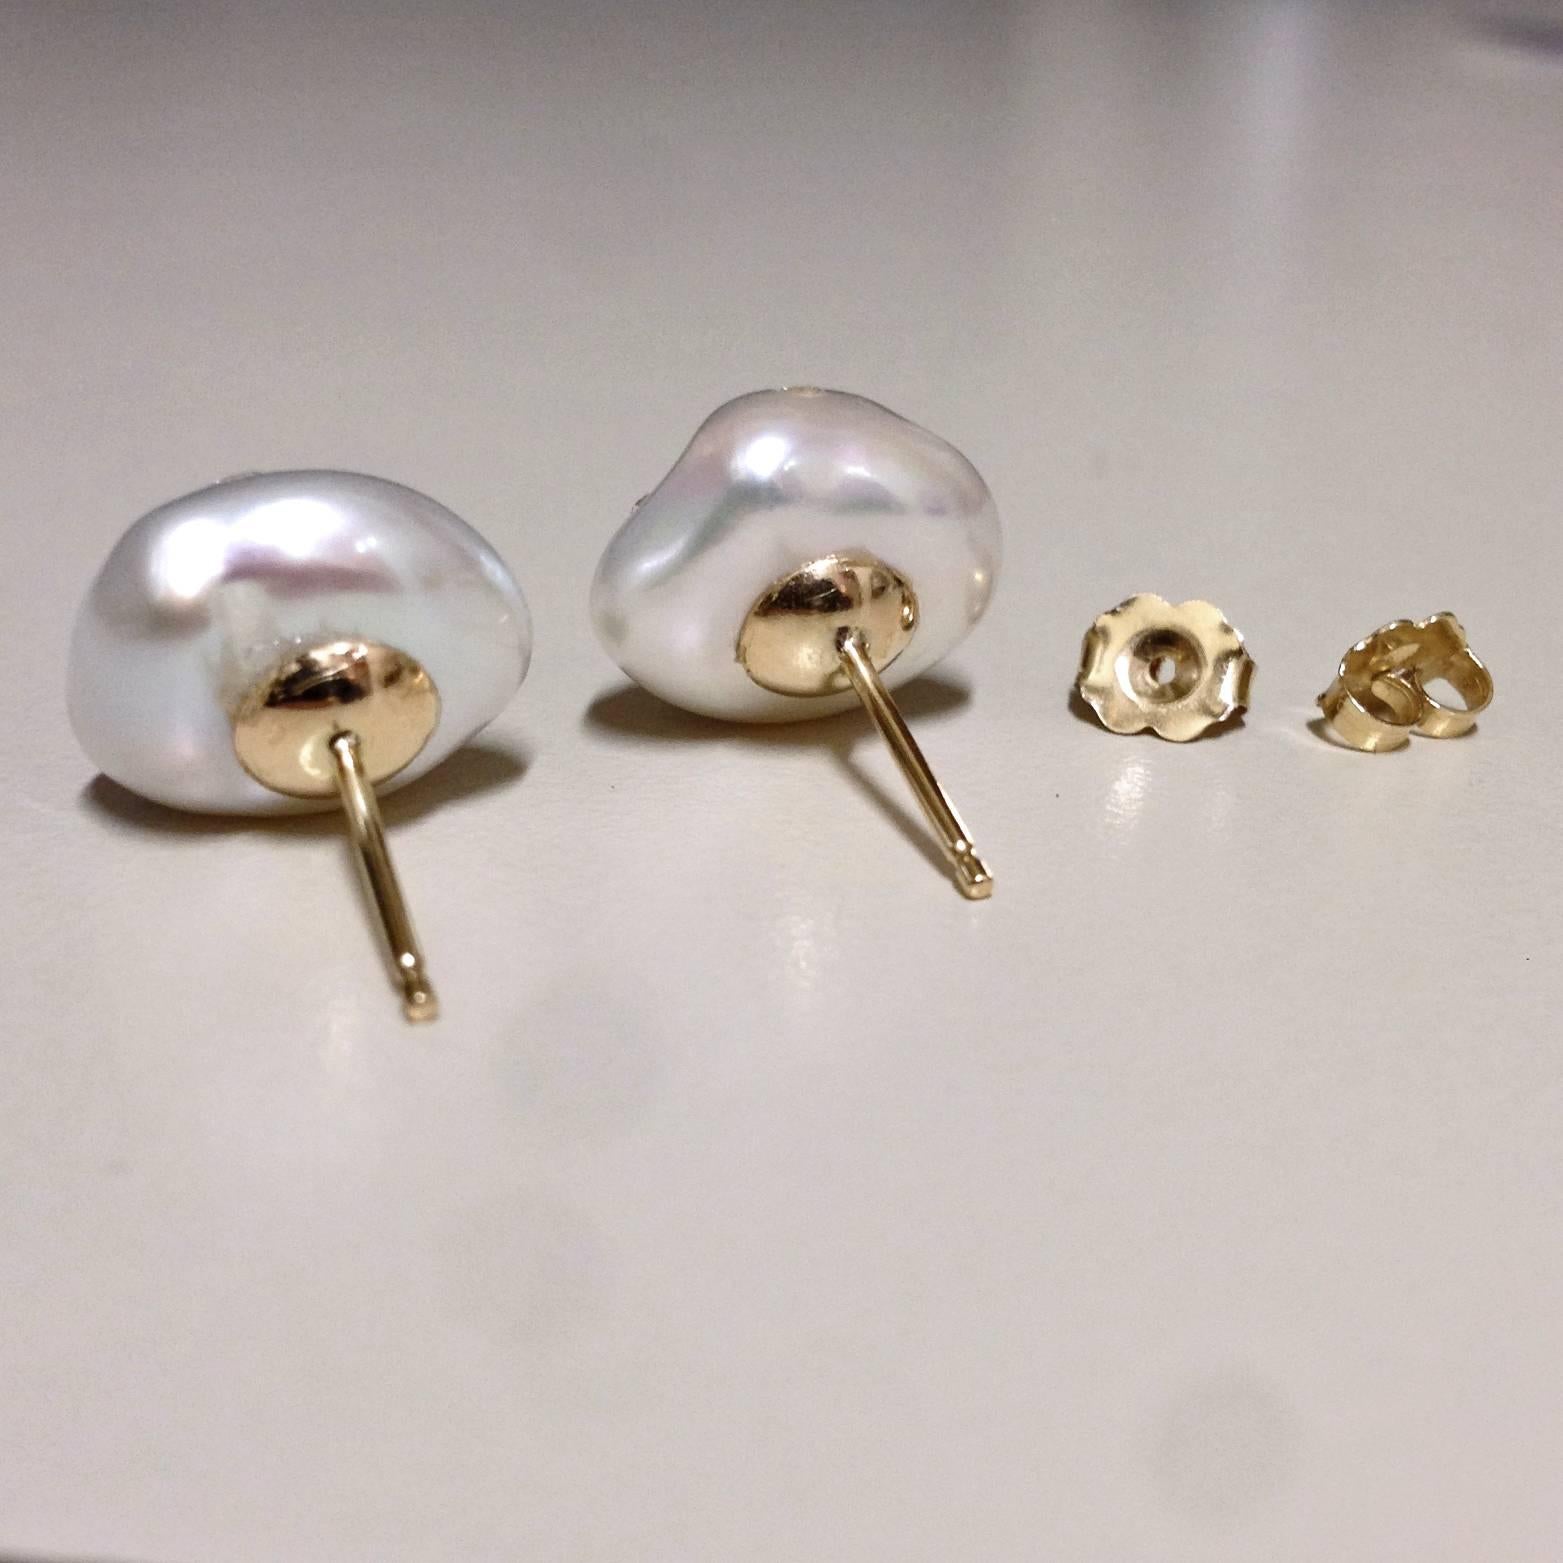 embedded earrings